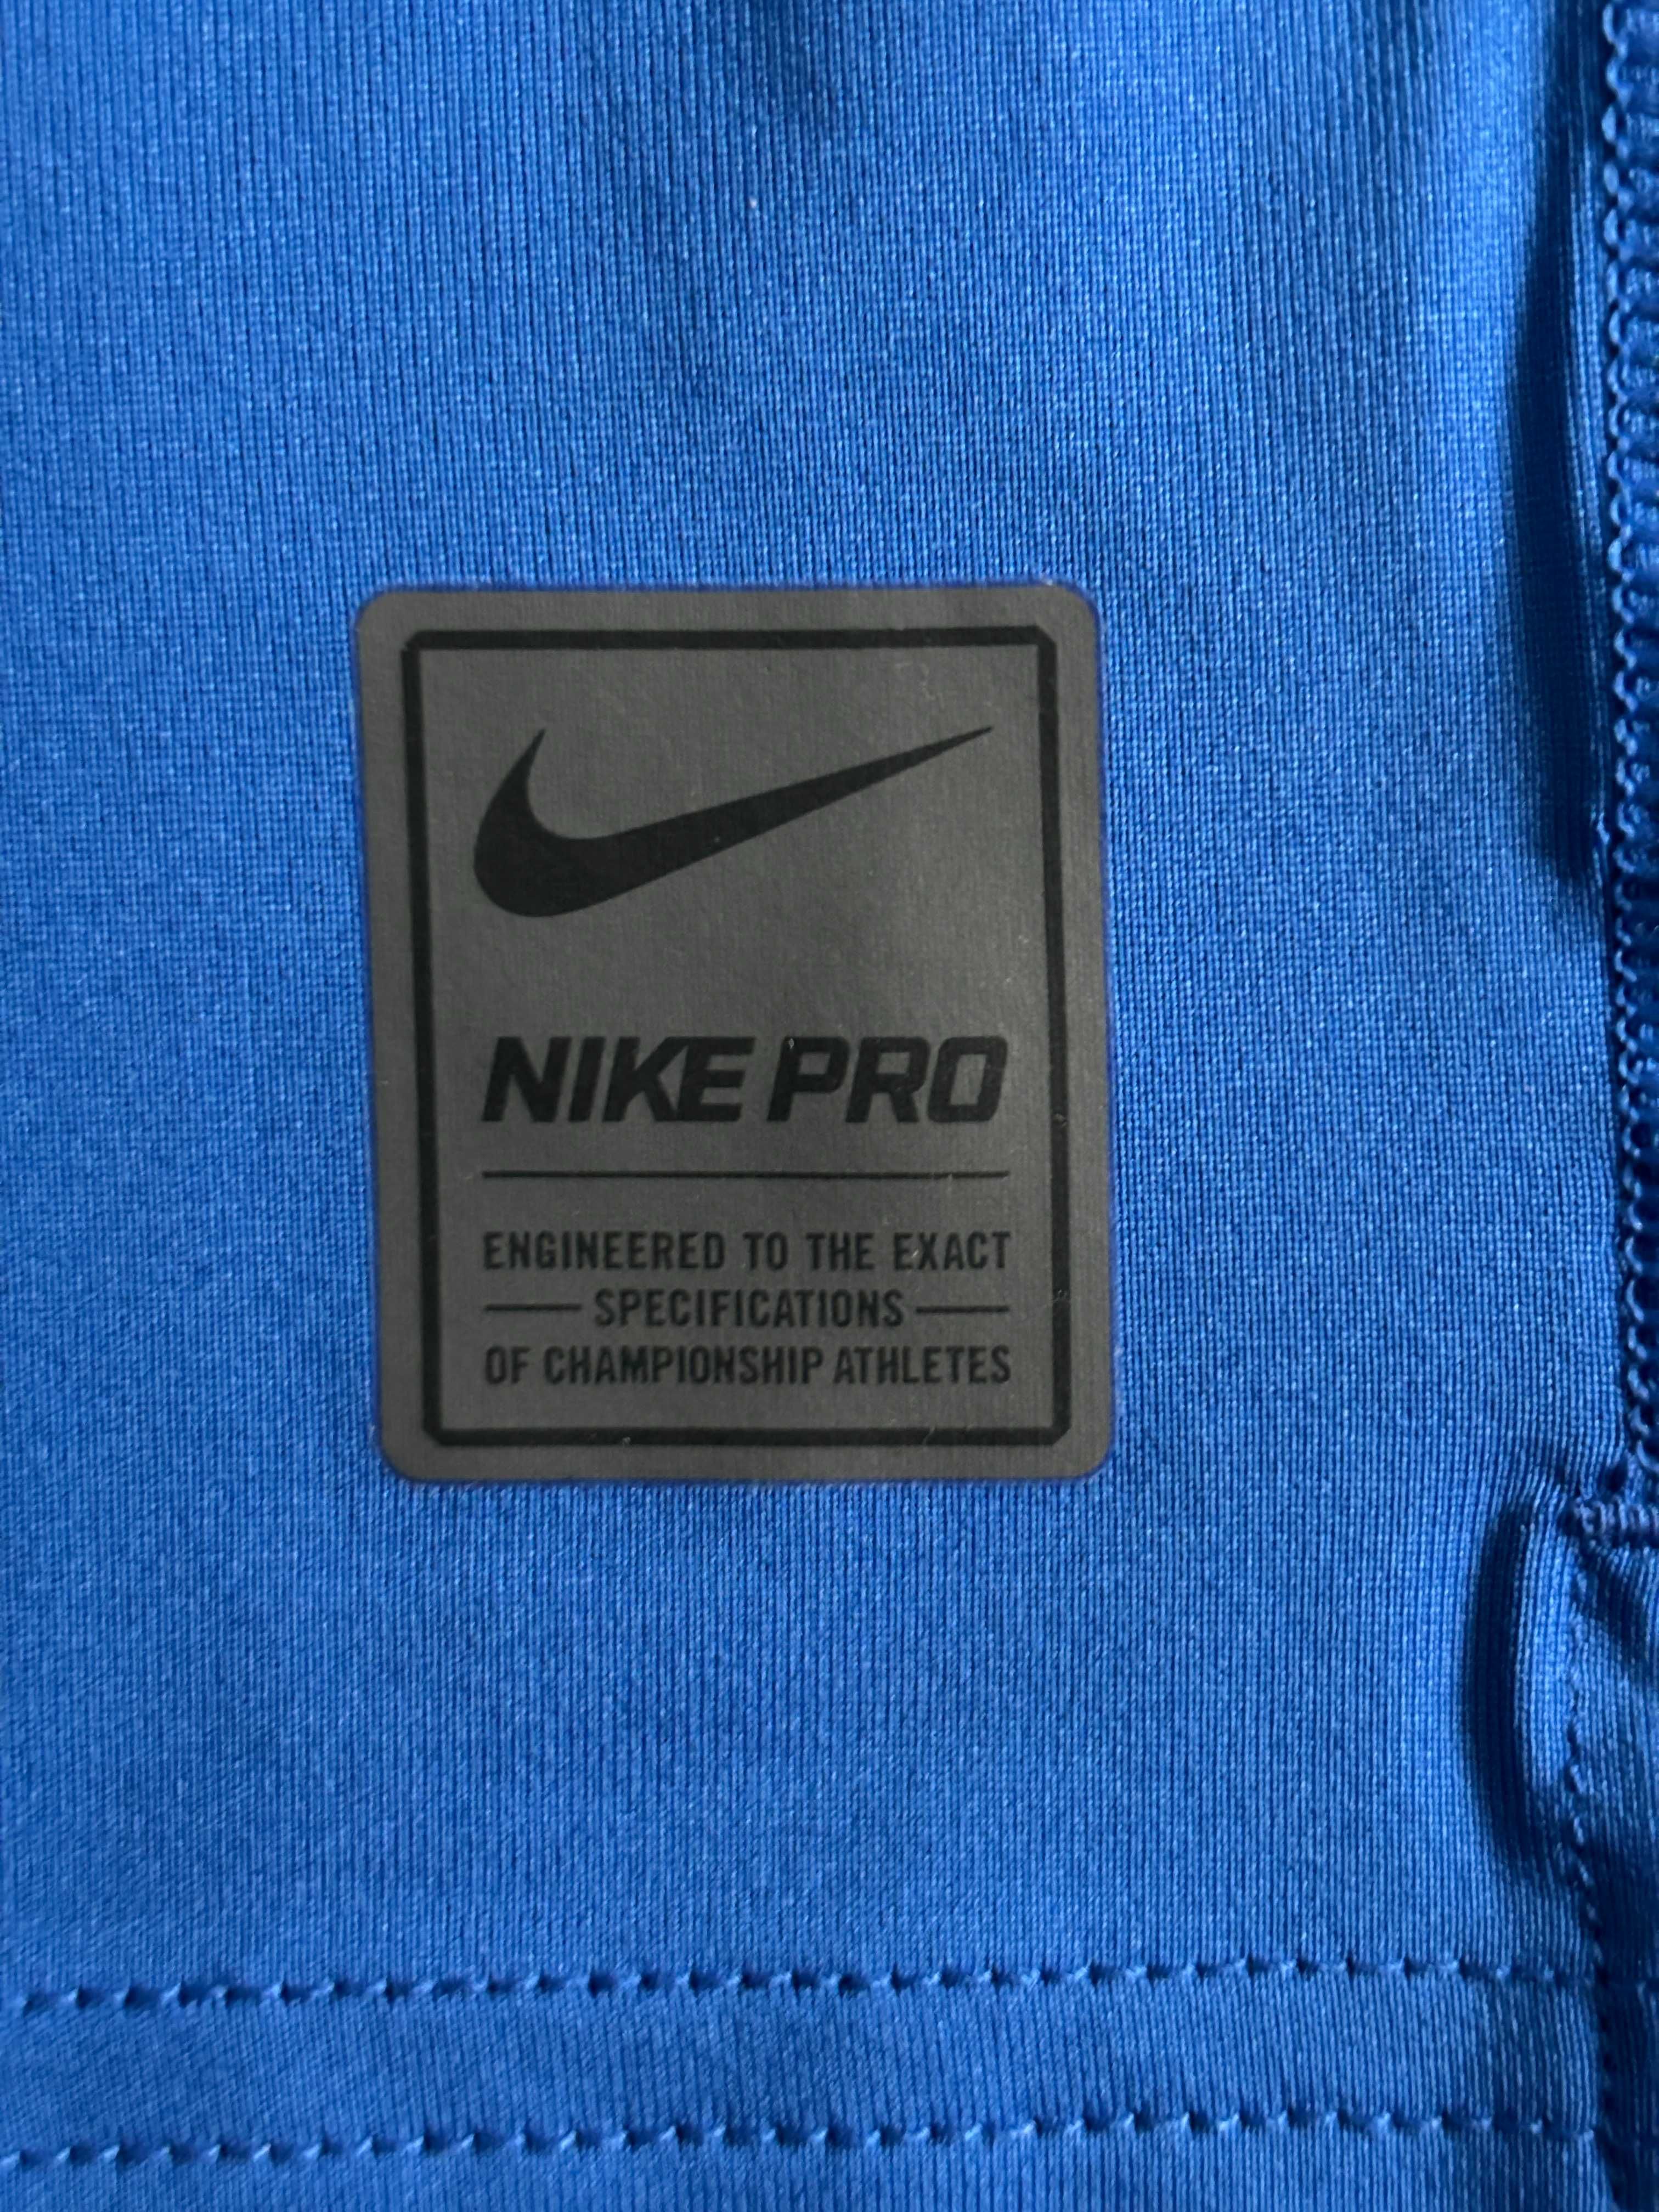 Nike PRO Cool Compression L Компрессионная Футболка Майка Оригинал